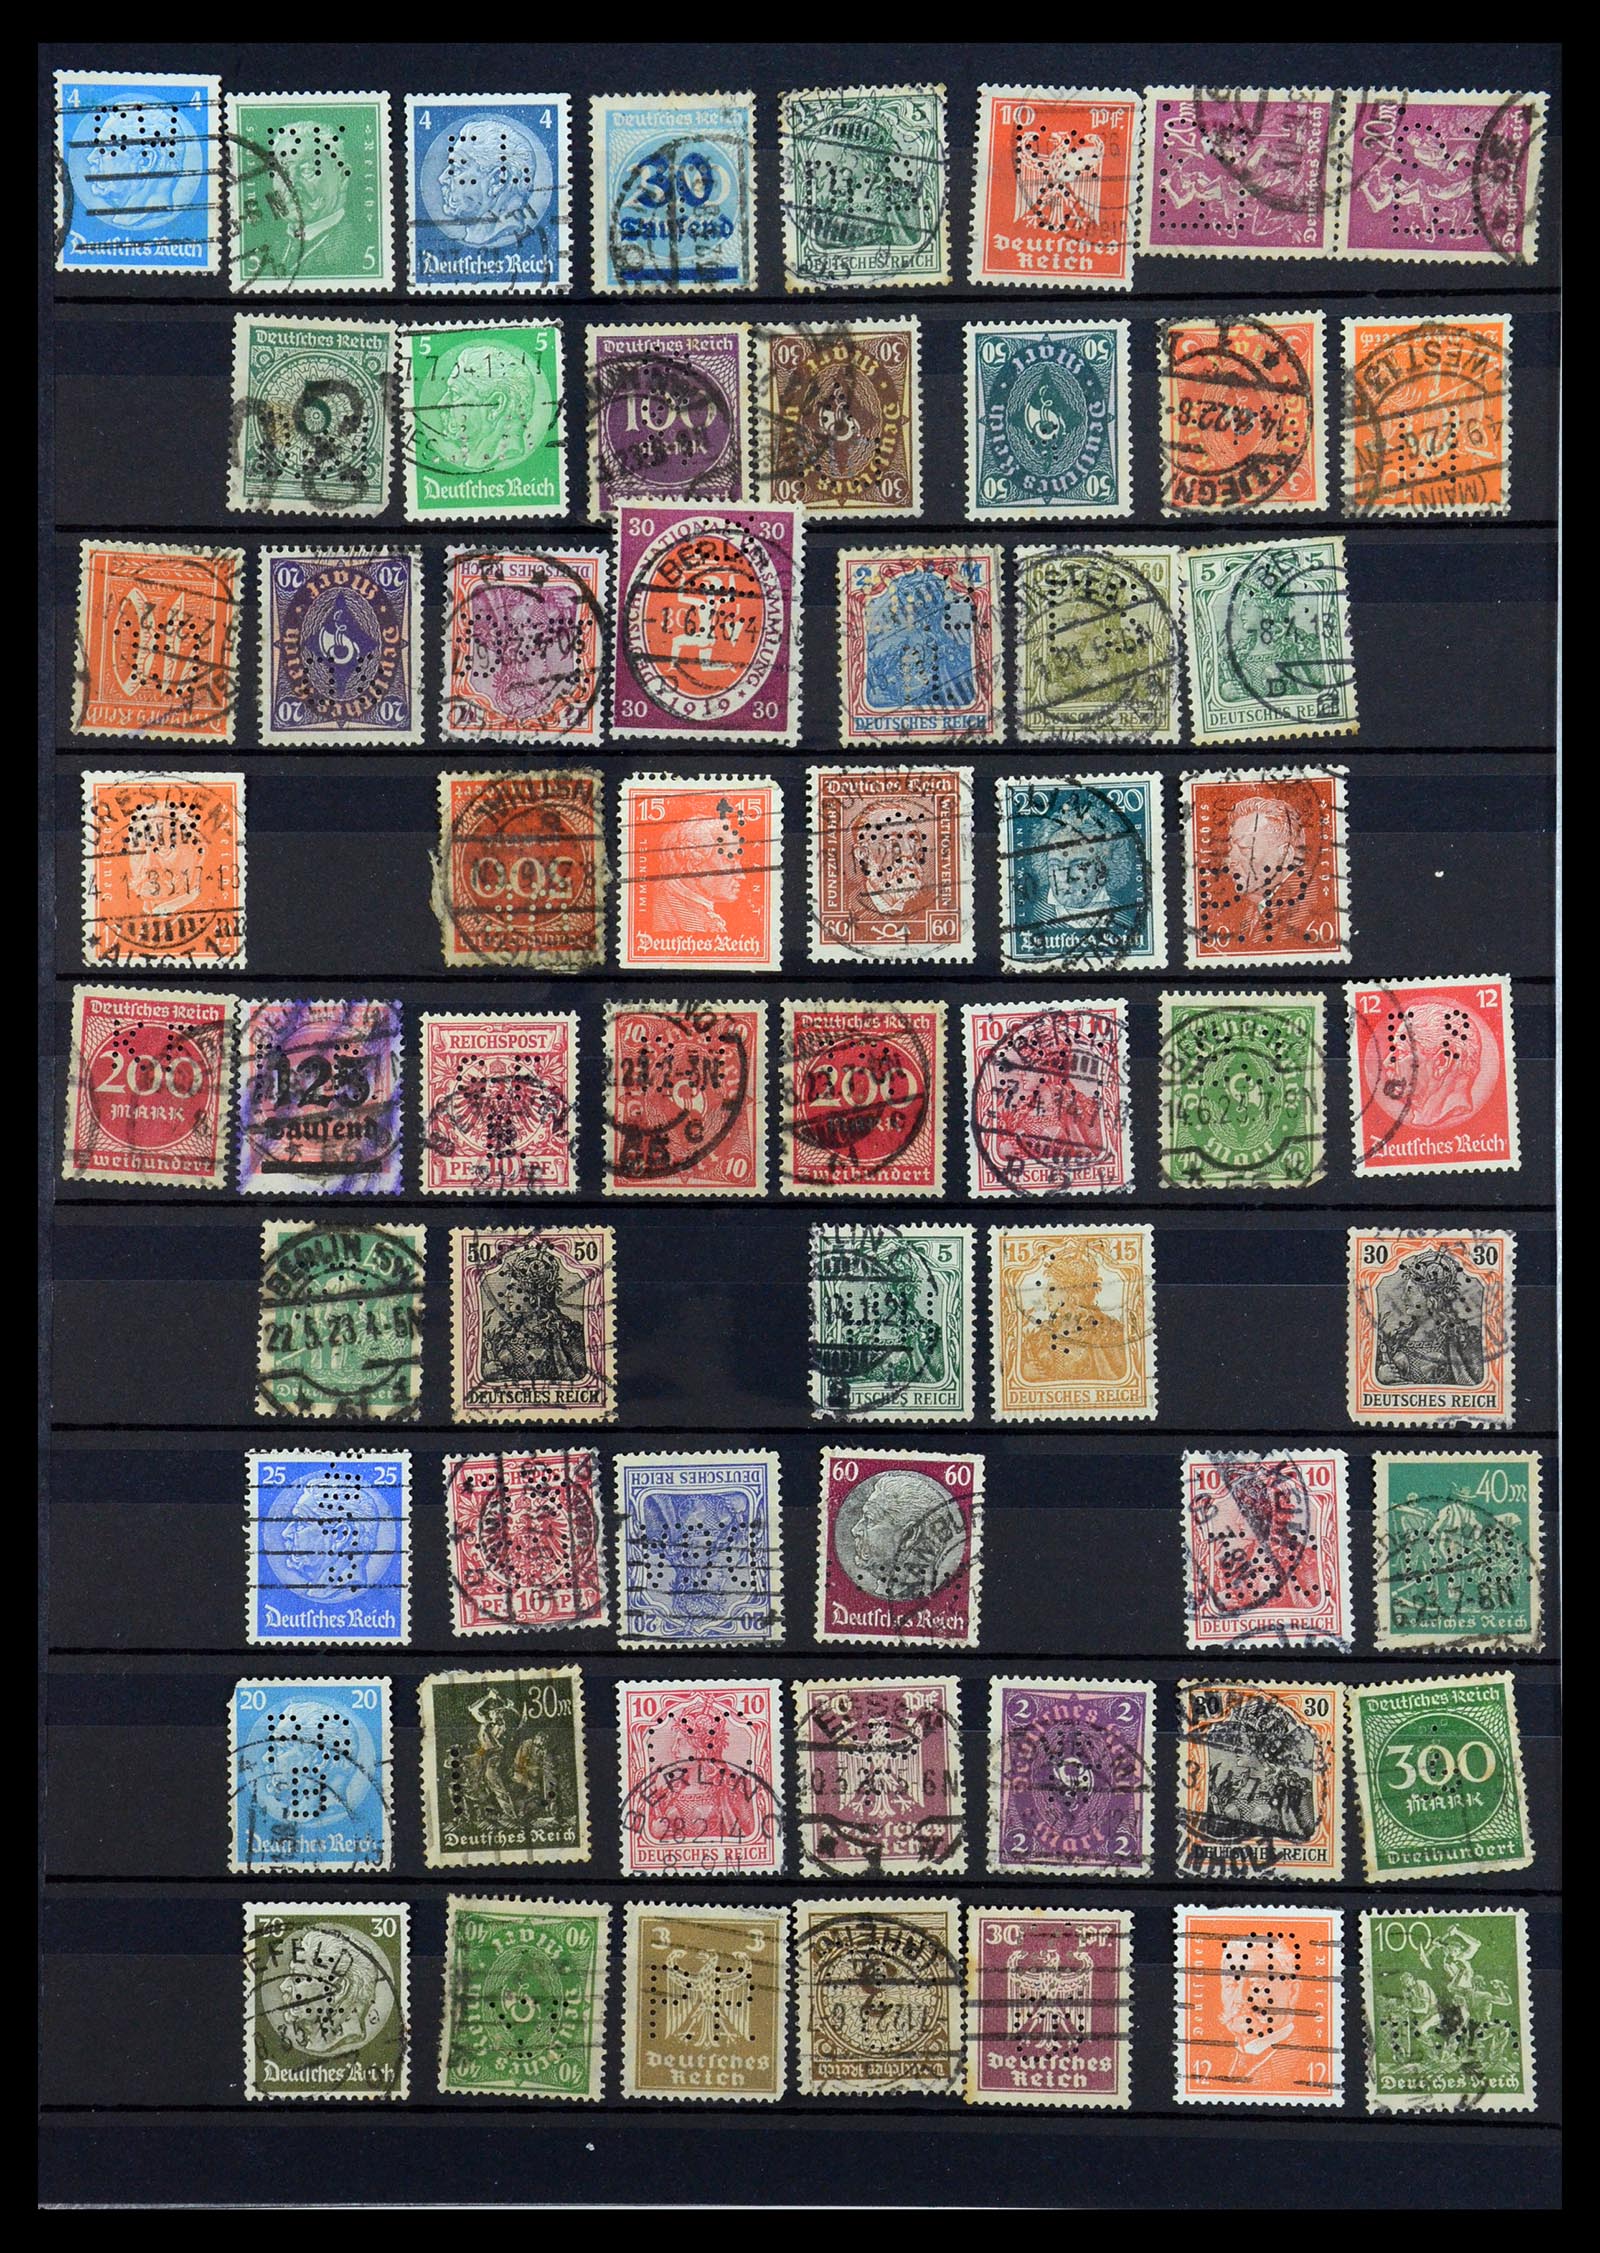 35183 048 - Stamp Collection 35183 German Reich perfins 1880-1945.